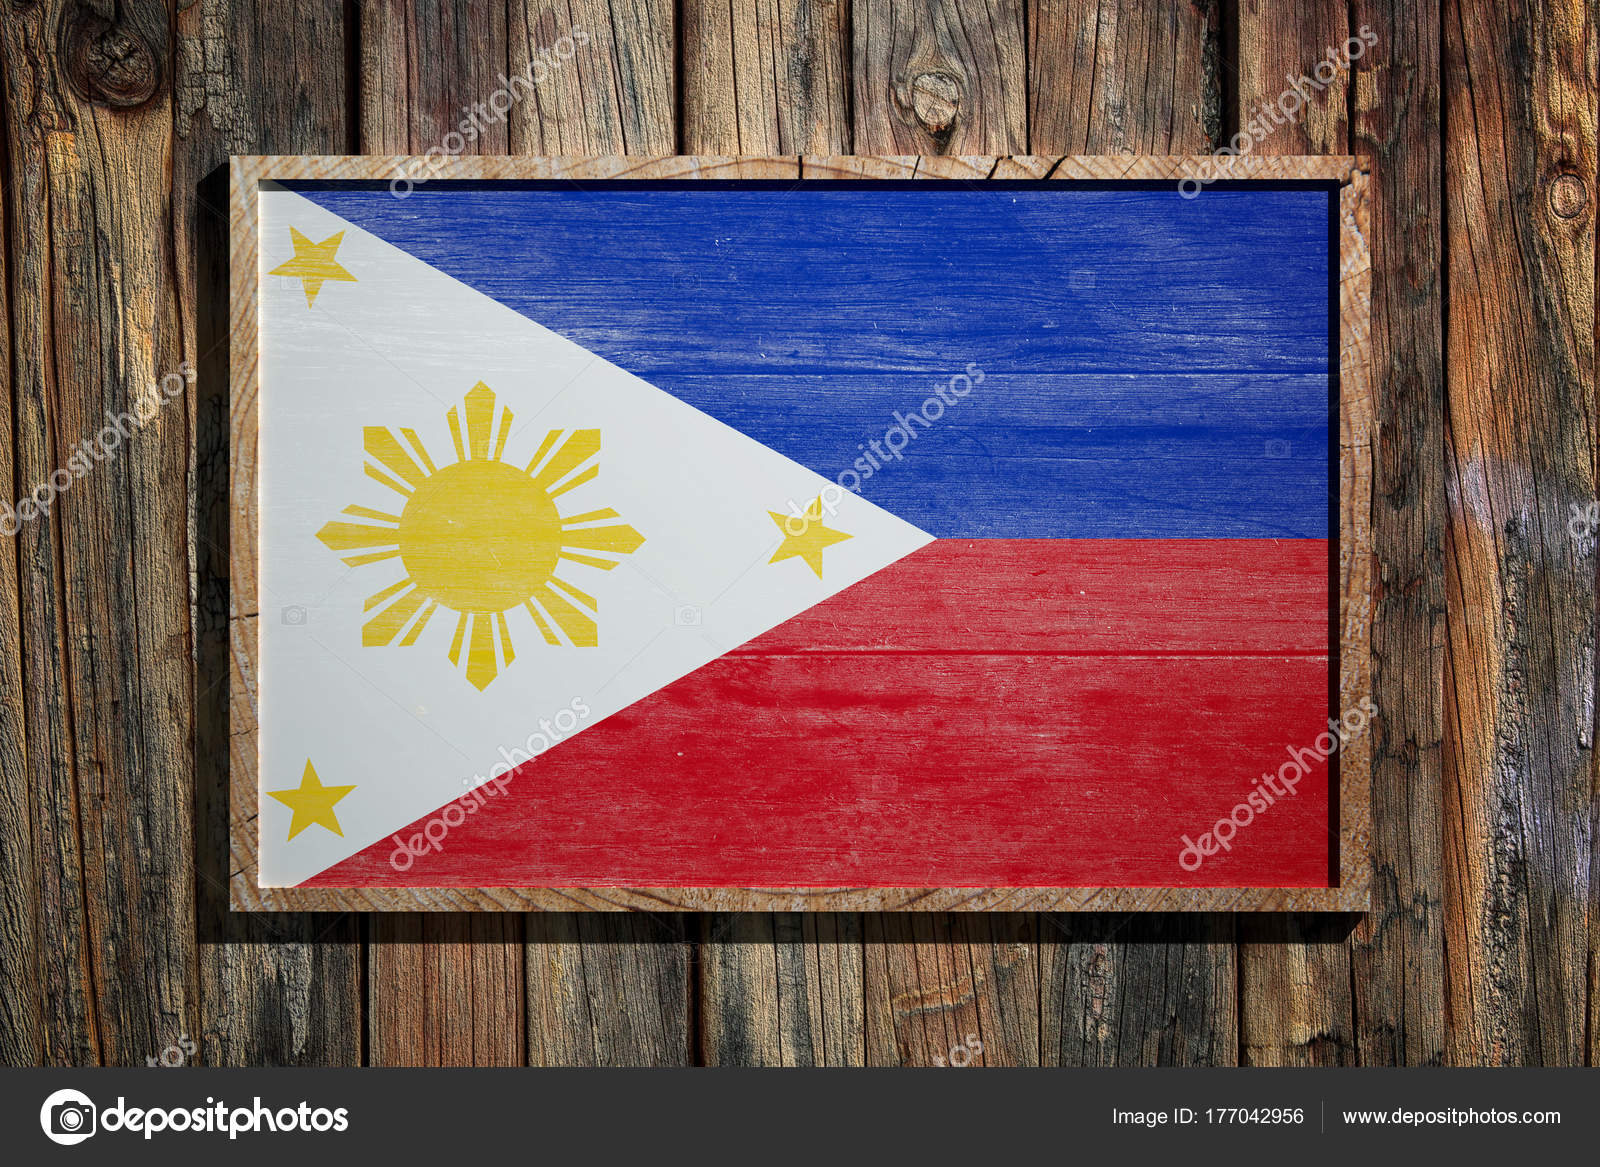 Holzerne Philippinische Flagge Stockfotografie Lizenzfreie Fotos C Erllre 177042956